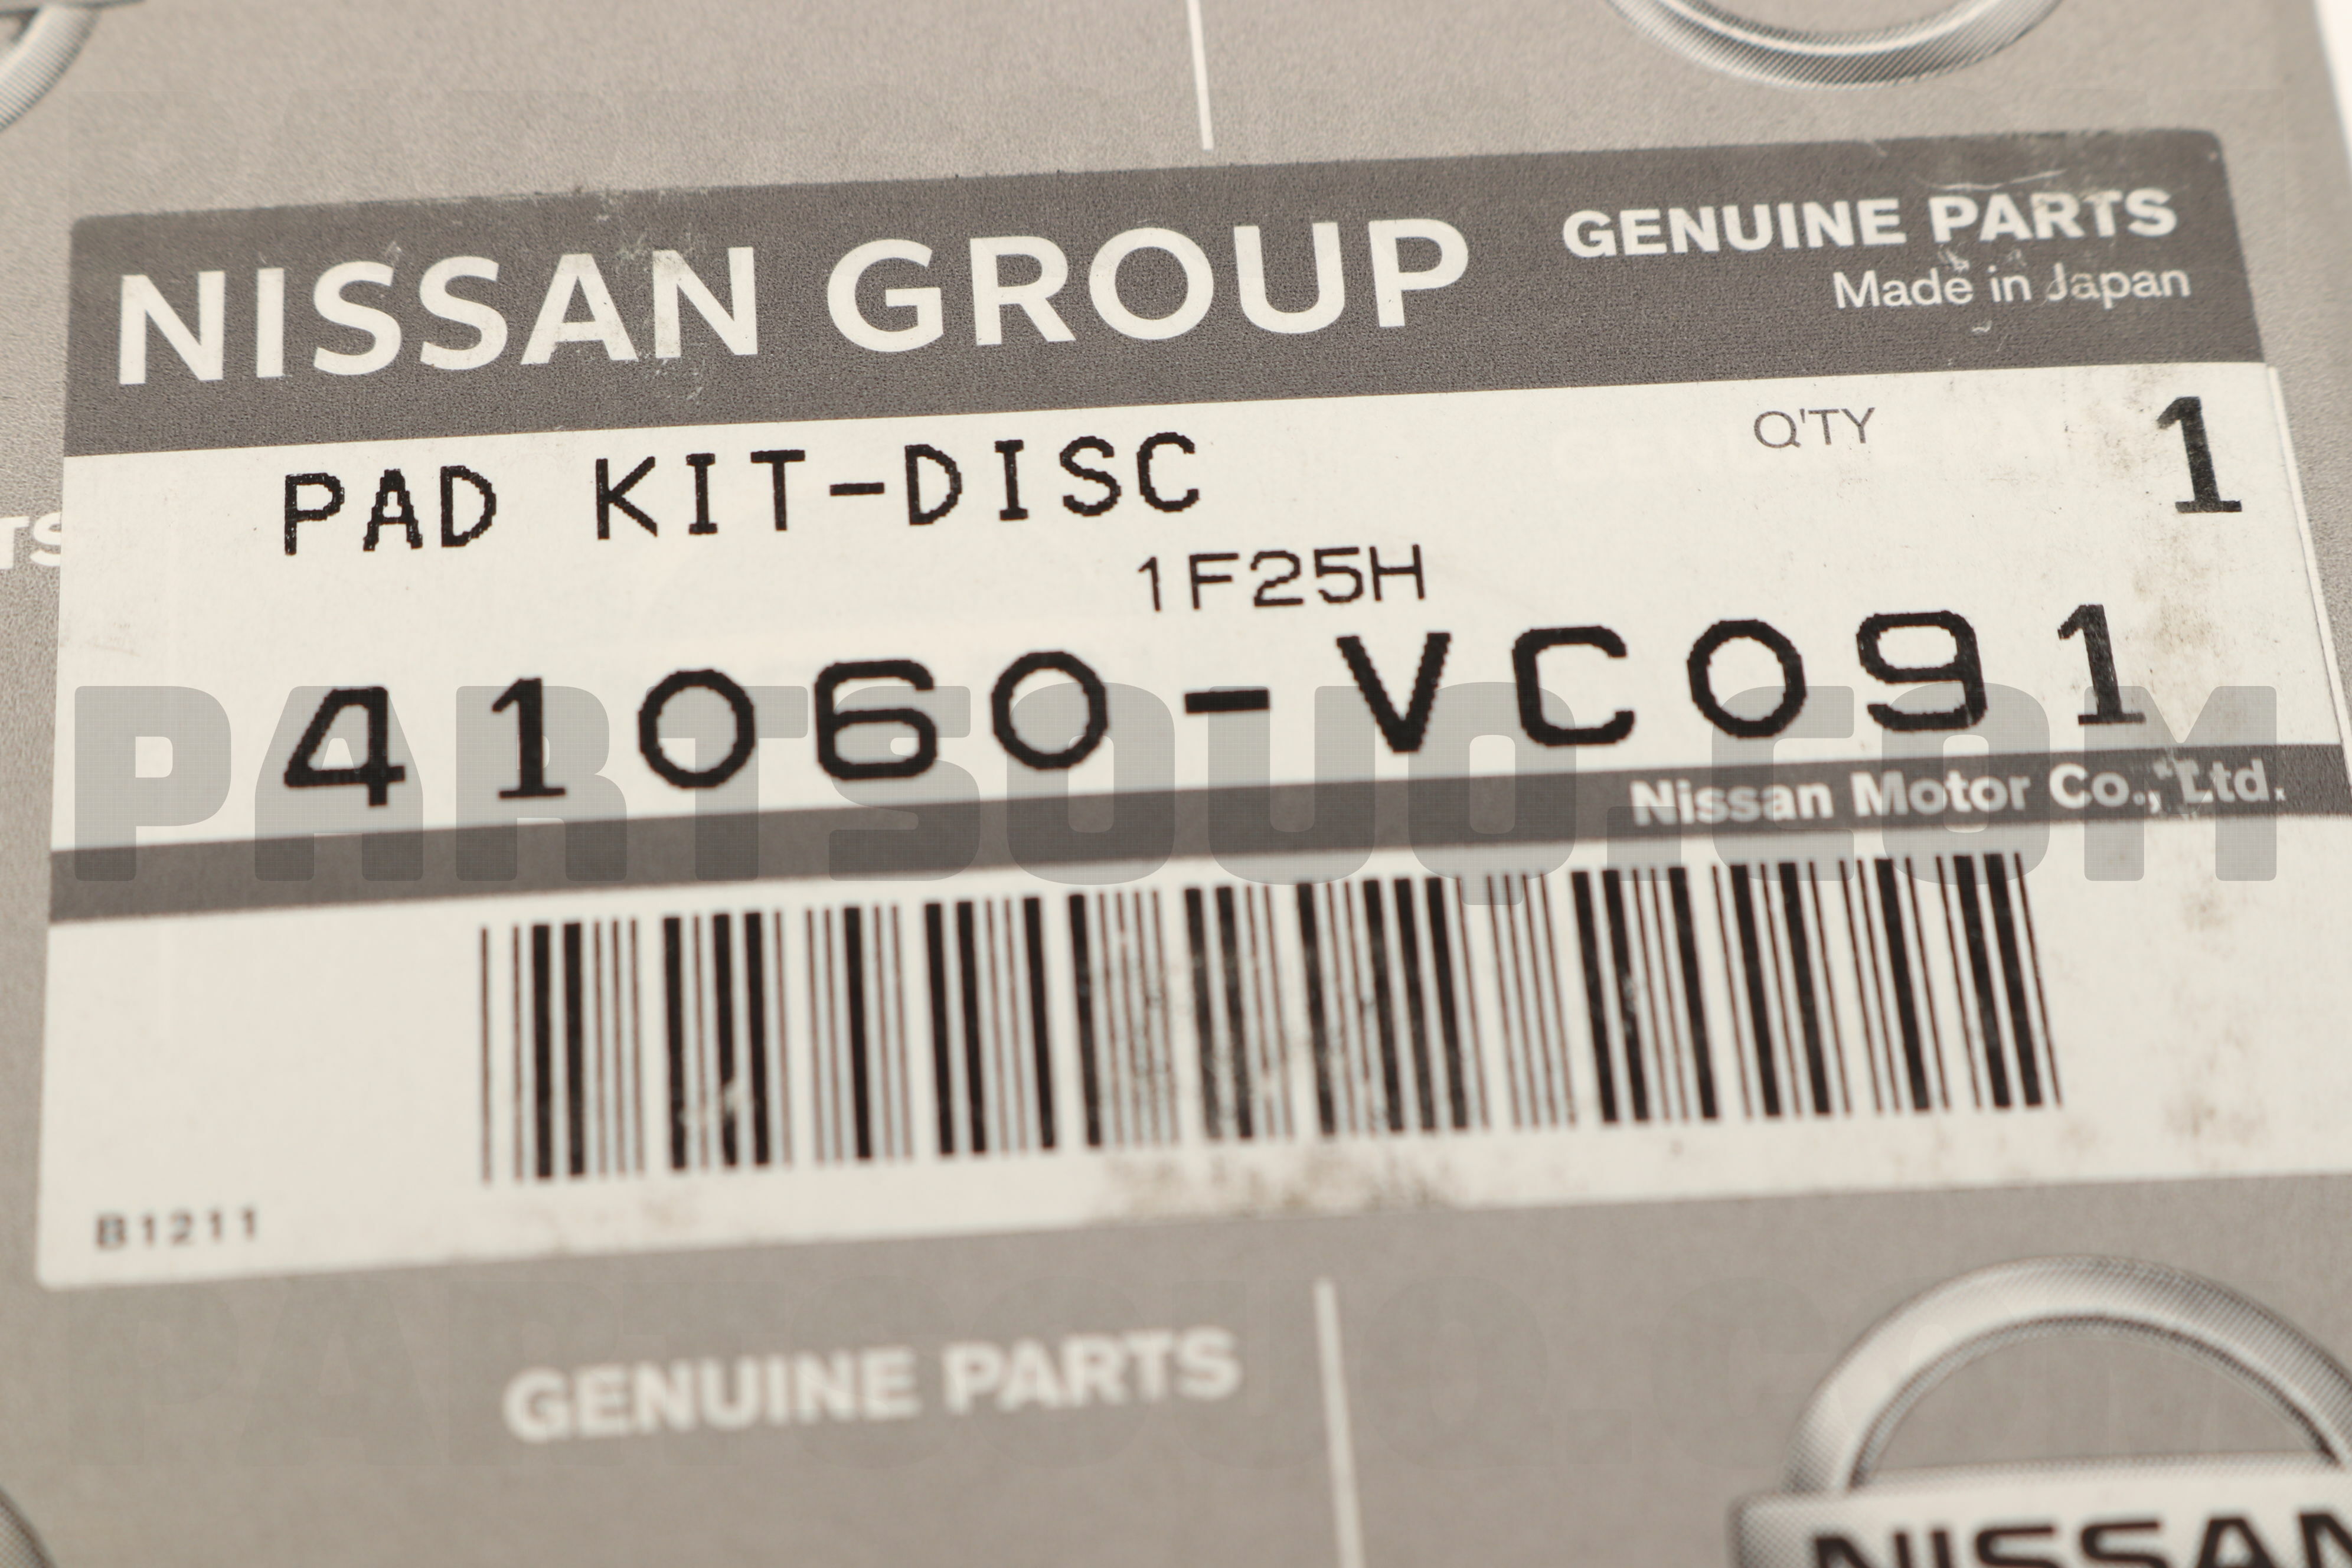 PAD KIT-DISC D1060VC091, Nissan Parts